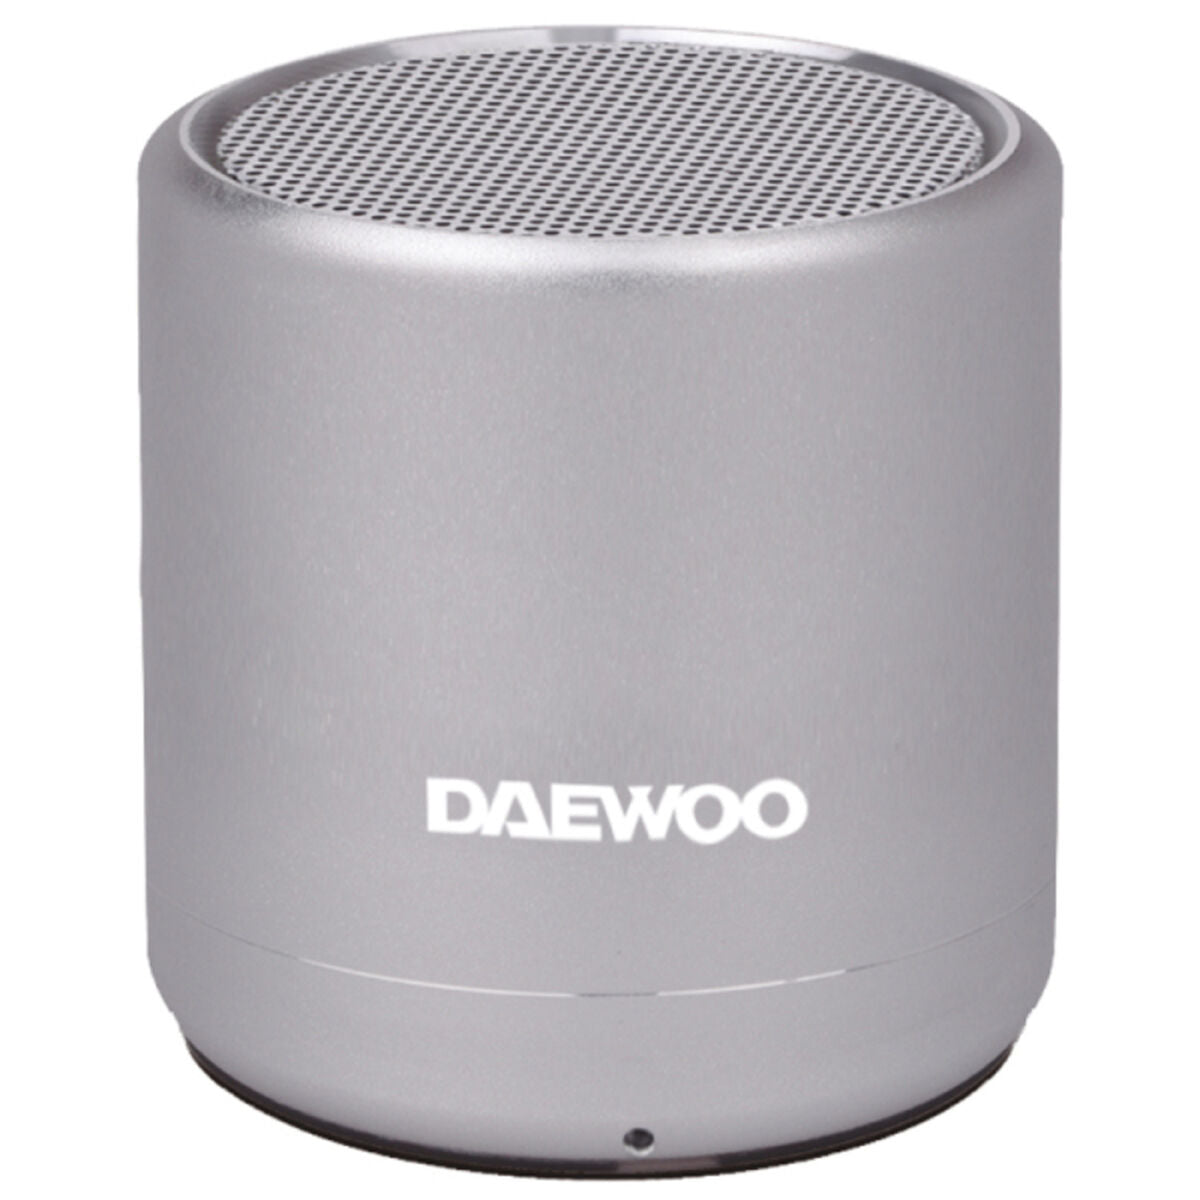 Daewoo DBT-212 5W Bluetooth-Lautsprecher